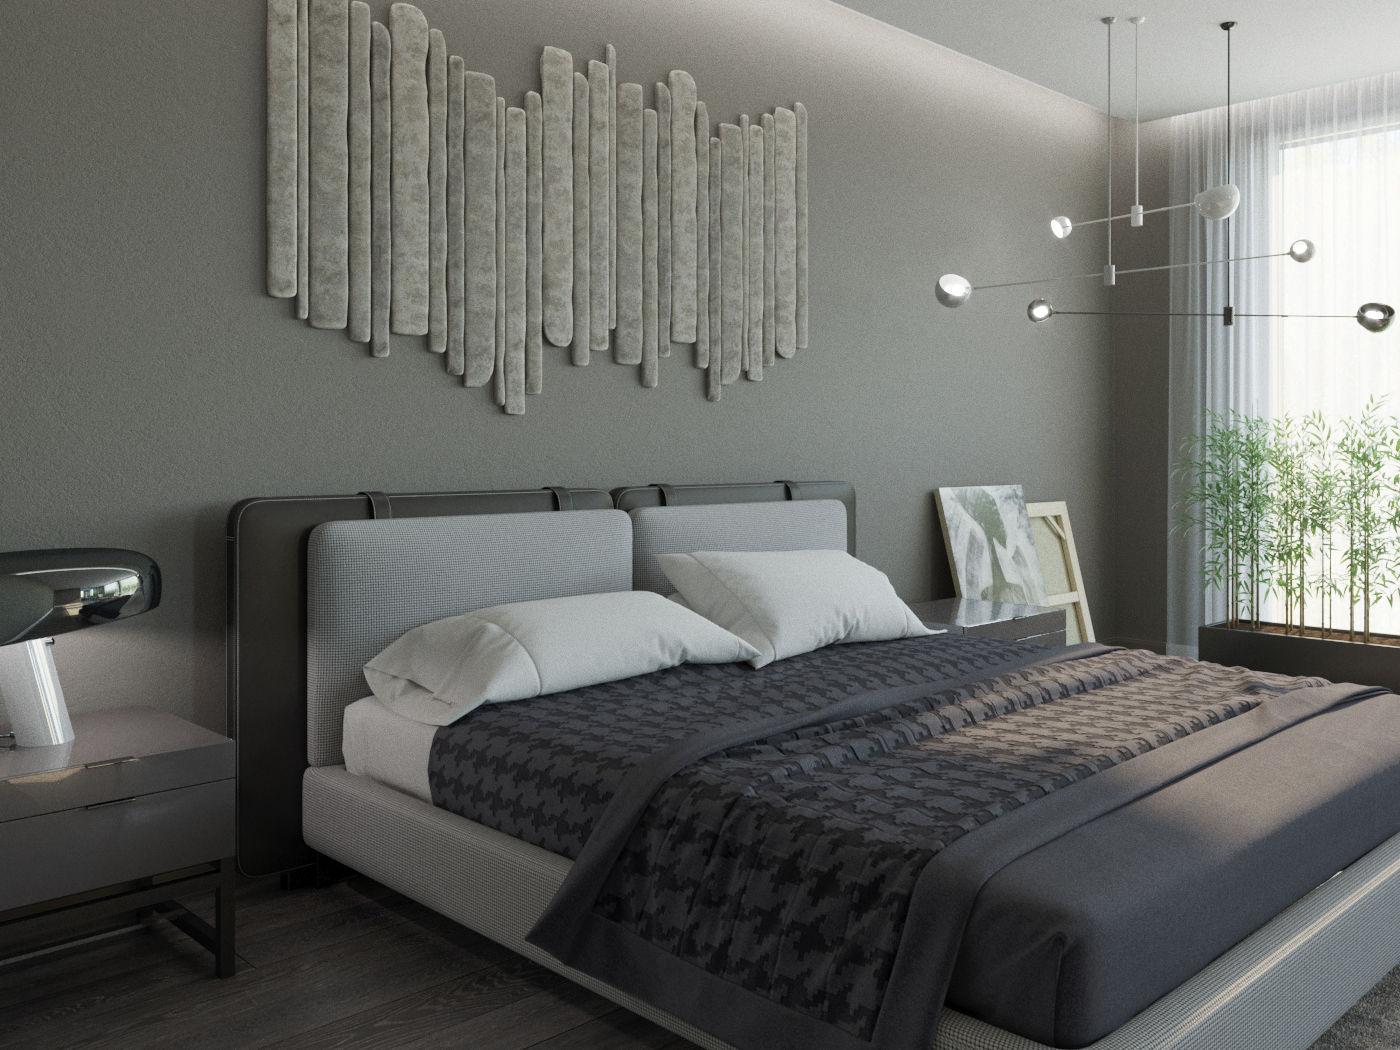 Гарнэ ДОМ СОЛНЦА Спальня в стиле минимализм плоская крыша,прикроватный столик,двуспальная кровать,комнатные растения,комнатная перегородка,деревянный пол,постельное белье